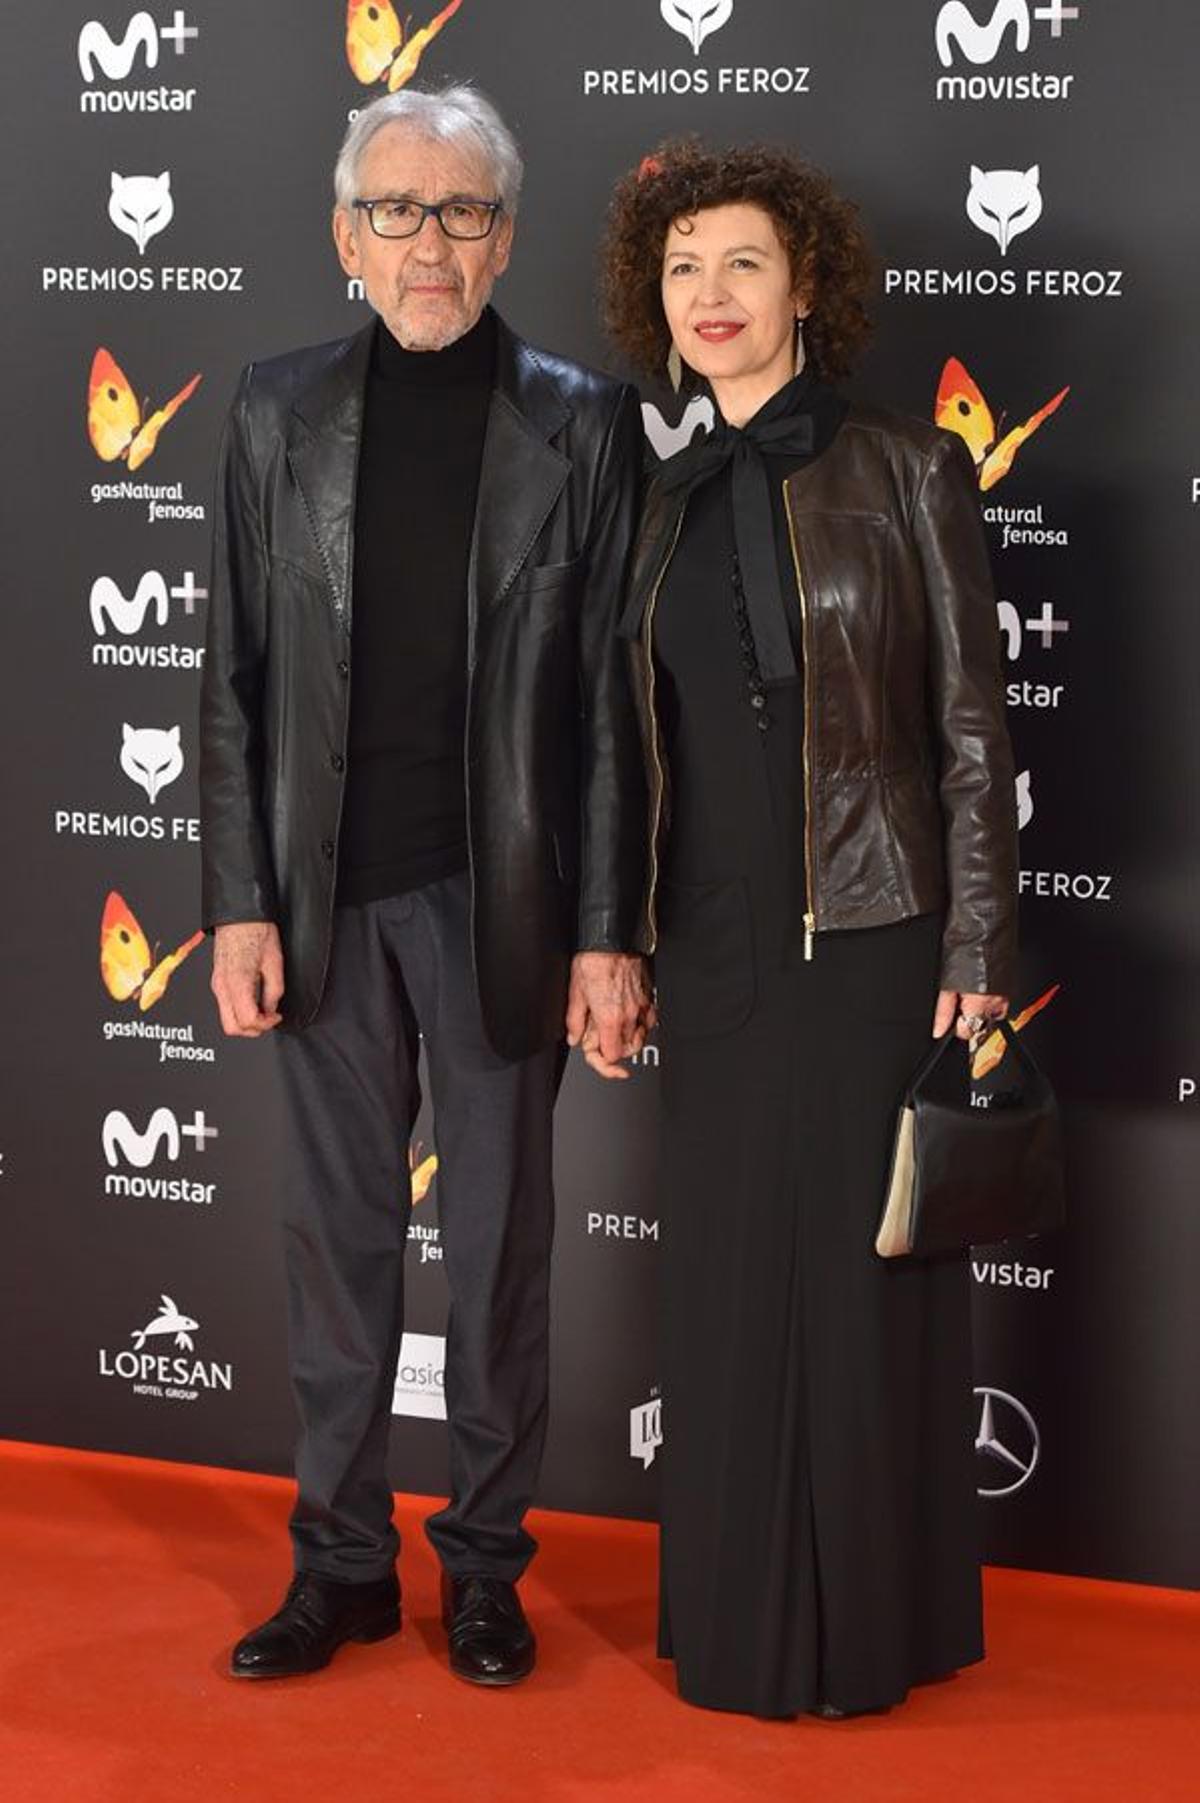 Premios Feroz 2017: José Sacristán y Amparo Pascual